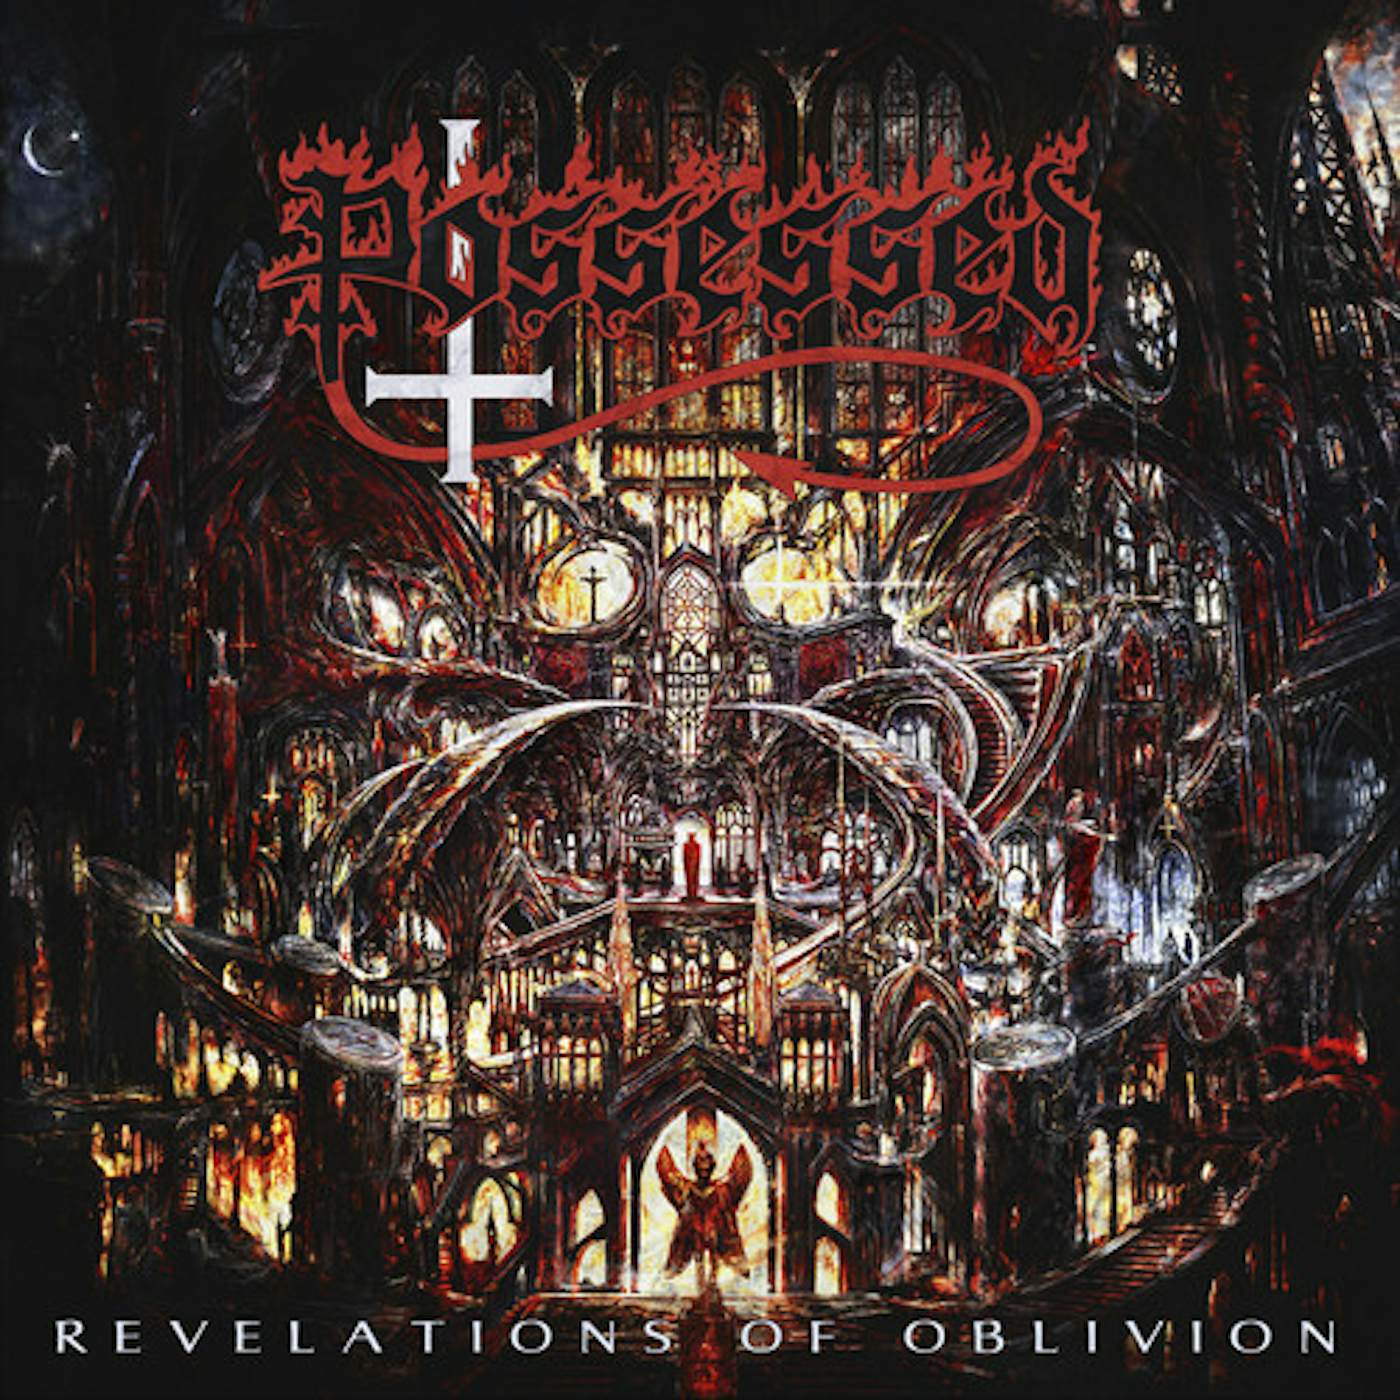 Possessed Revelations of Oblivion Vinyl Record